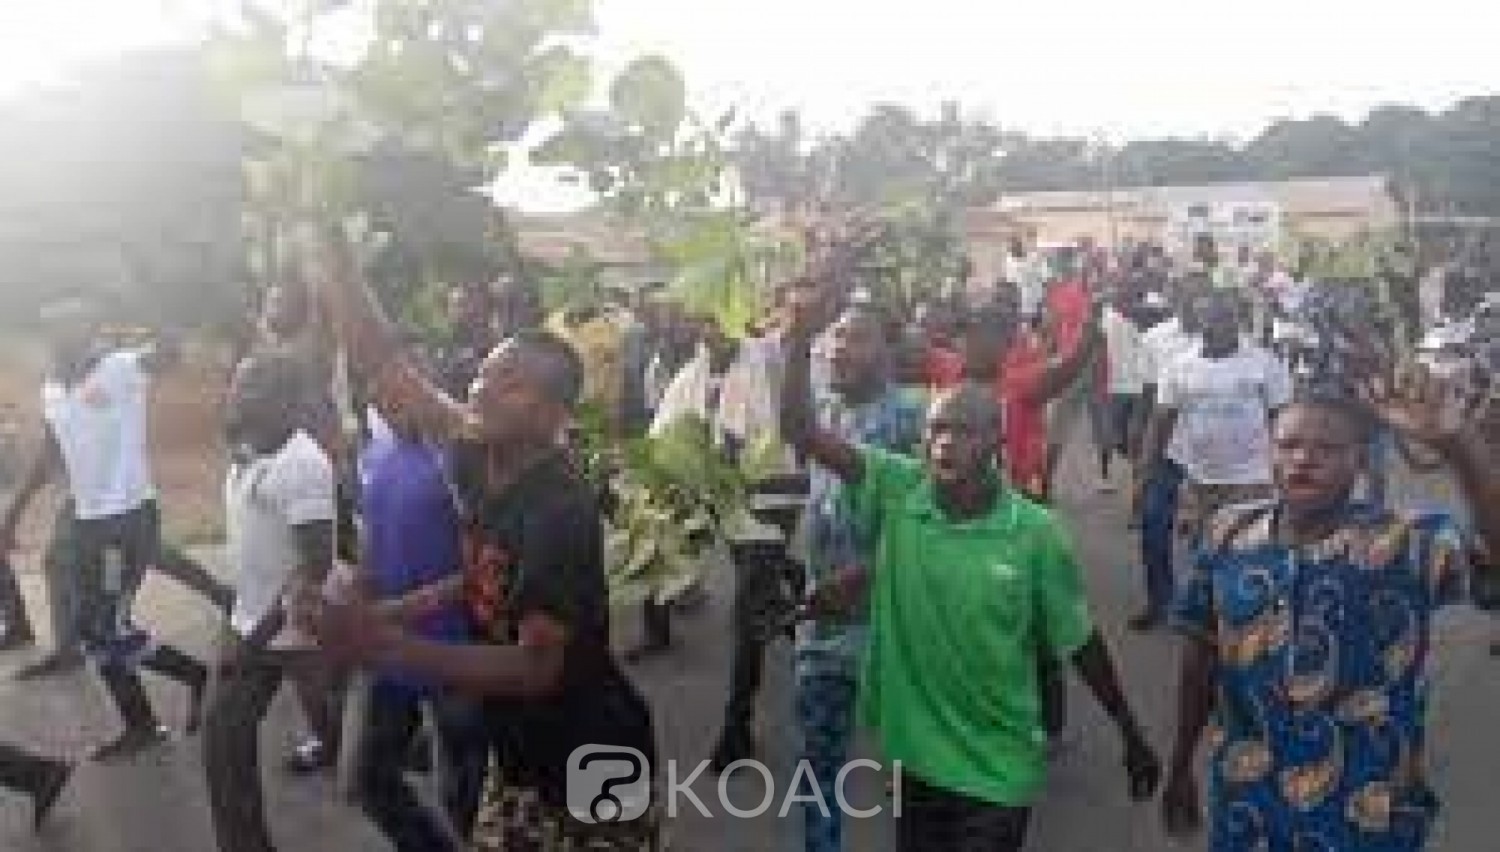 Bénin : Contre la prolongation du mandat de Patrice Talon, des manifestations éclatent dans plusieurs villes